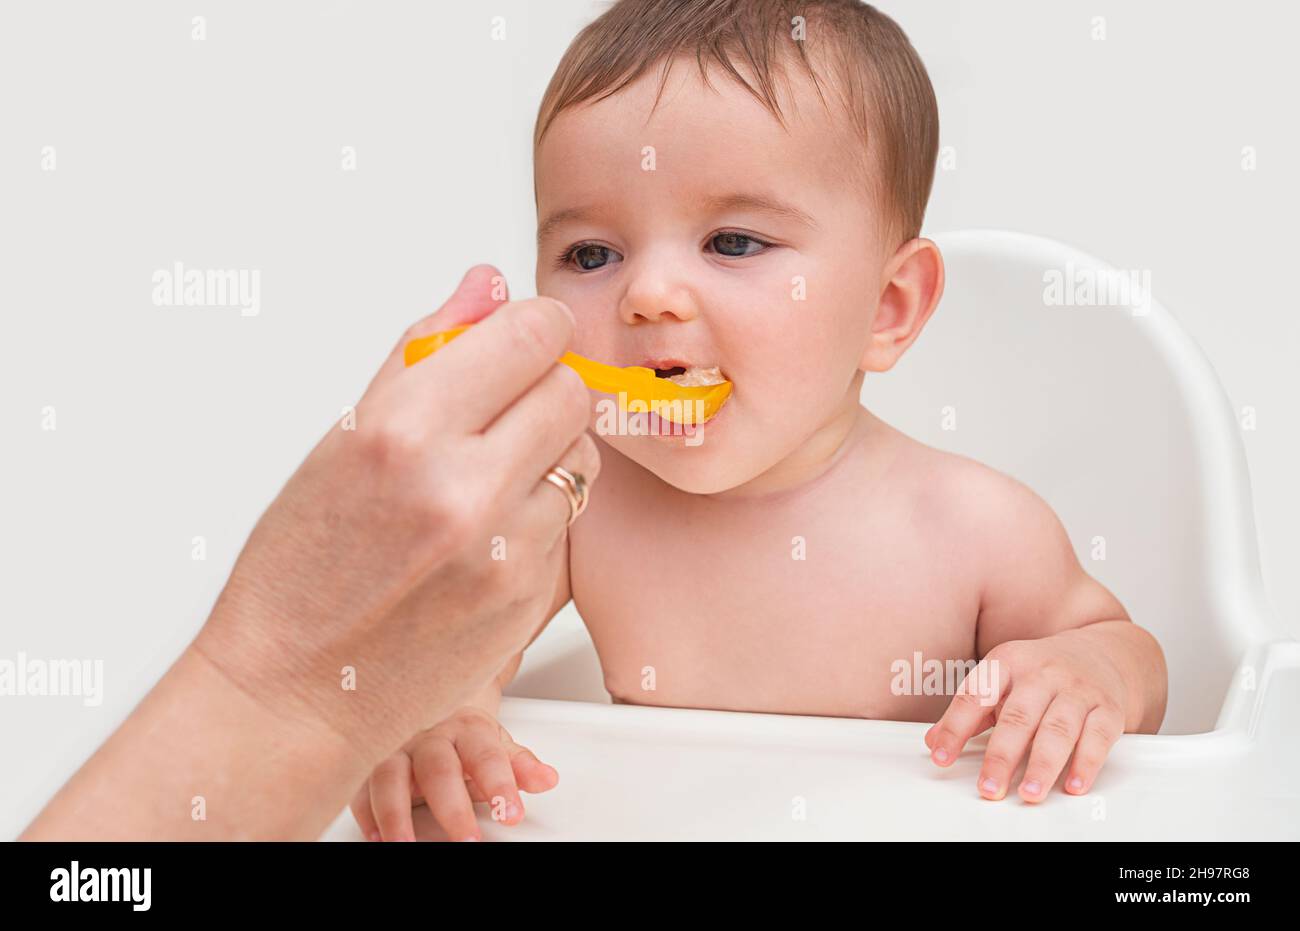 Die erste Fütterung des Babys. Das Kind öffnet seinen Mund, um natürliches Orangenpüree aus einem orangefarbenen Löffel aus der Hand seiner Mutter zu essen Stockfoto